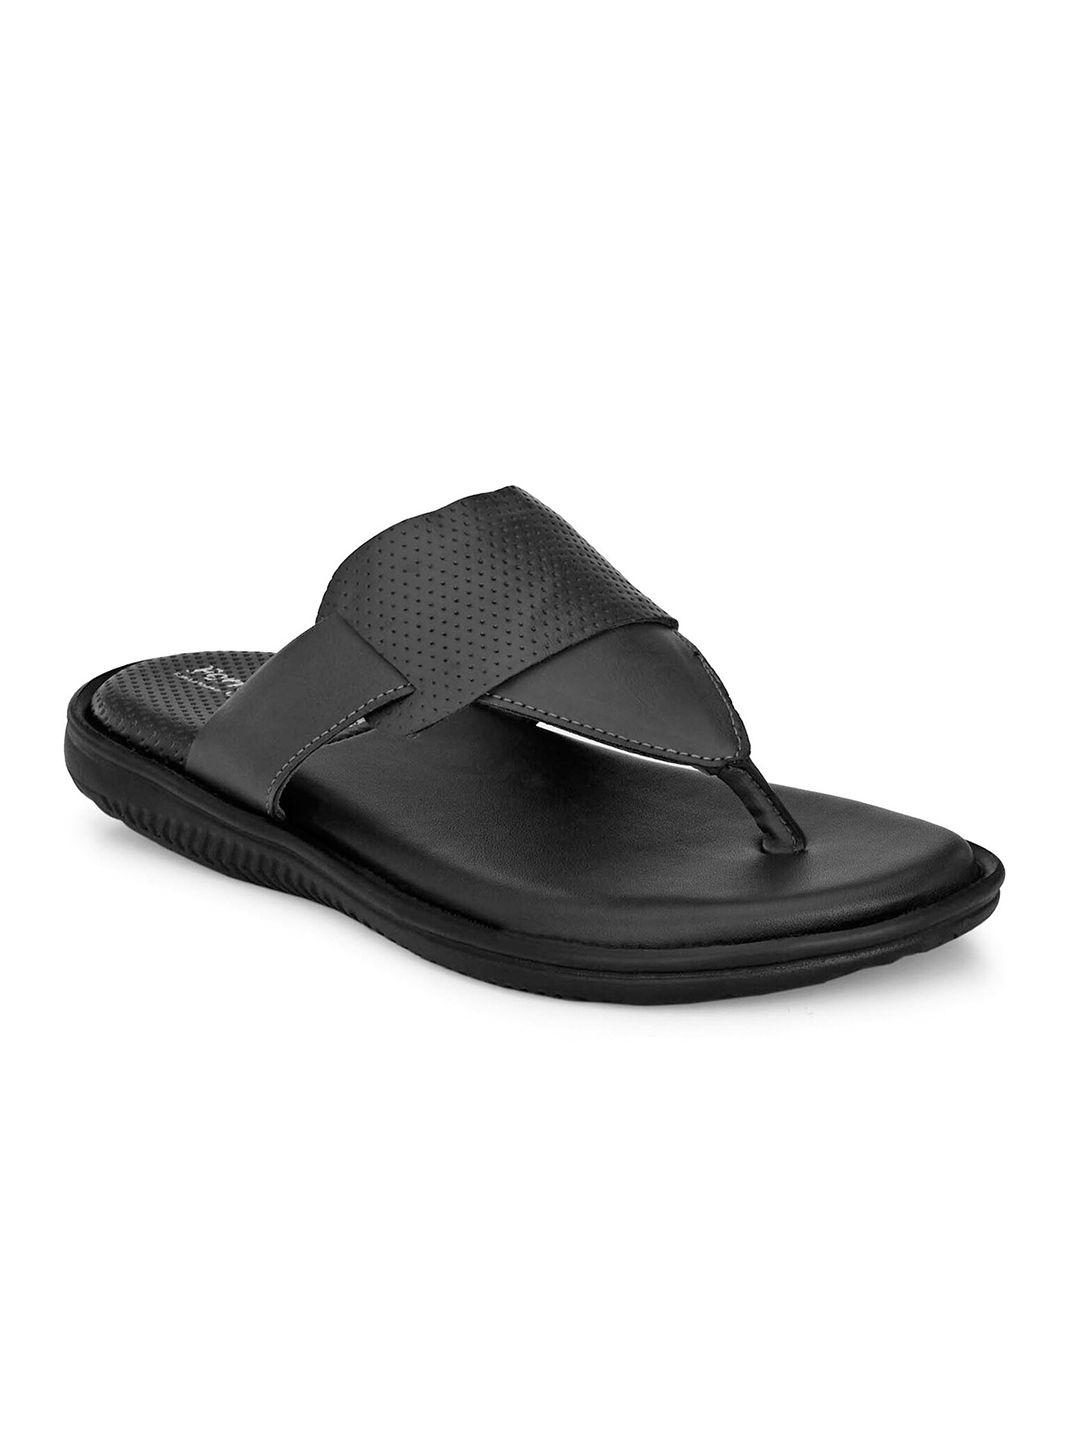 birgos-men-black-comfort-sandals